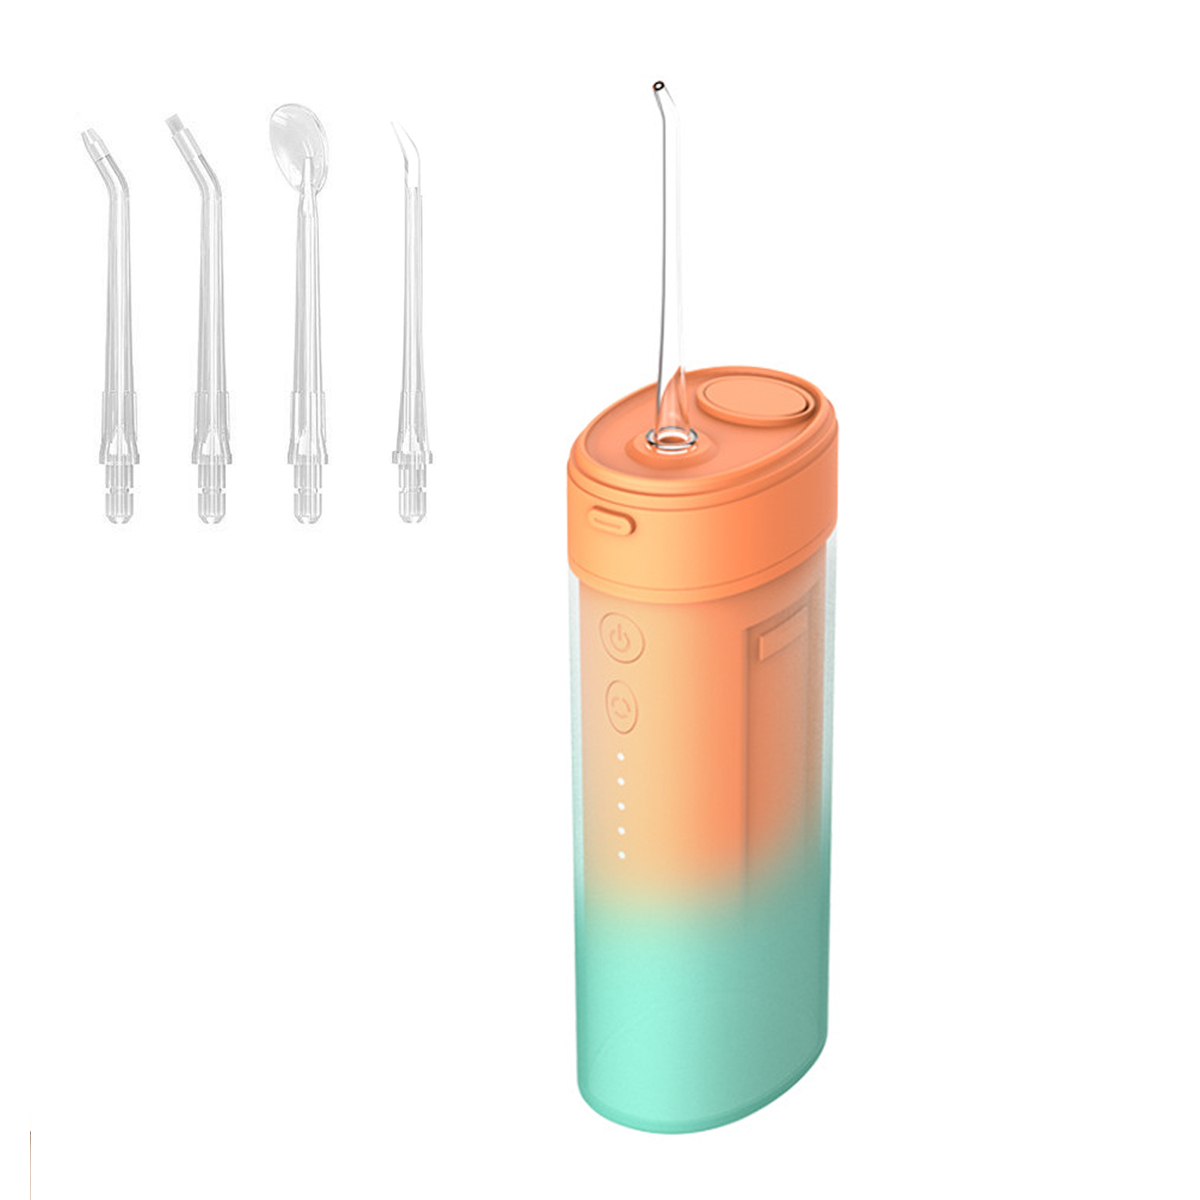 KINSI Munddusche Elektrische, IPX7, 4 Dentalwerkzeug Care Düsen, Zahnreiniger Modi/4 Oral